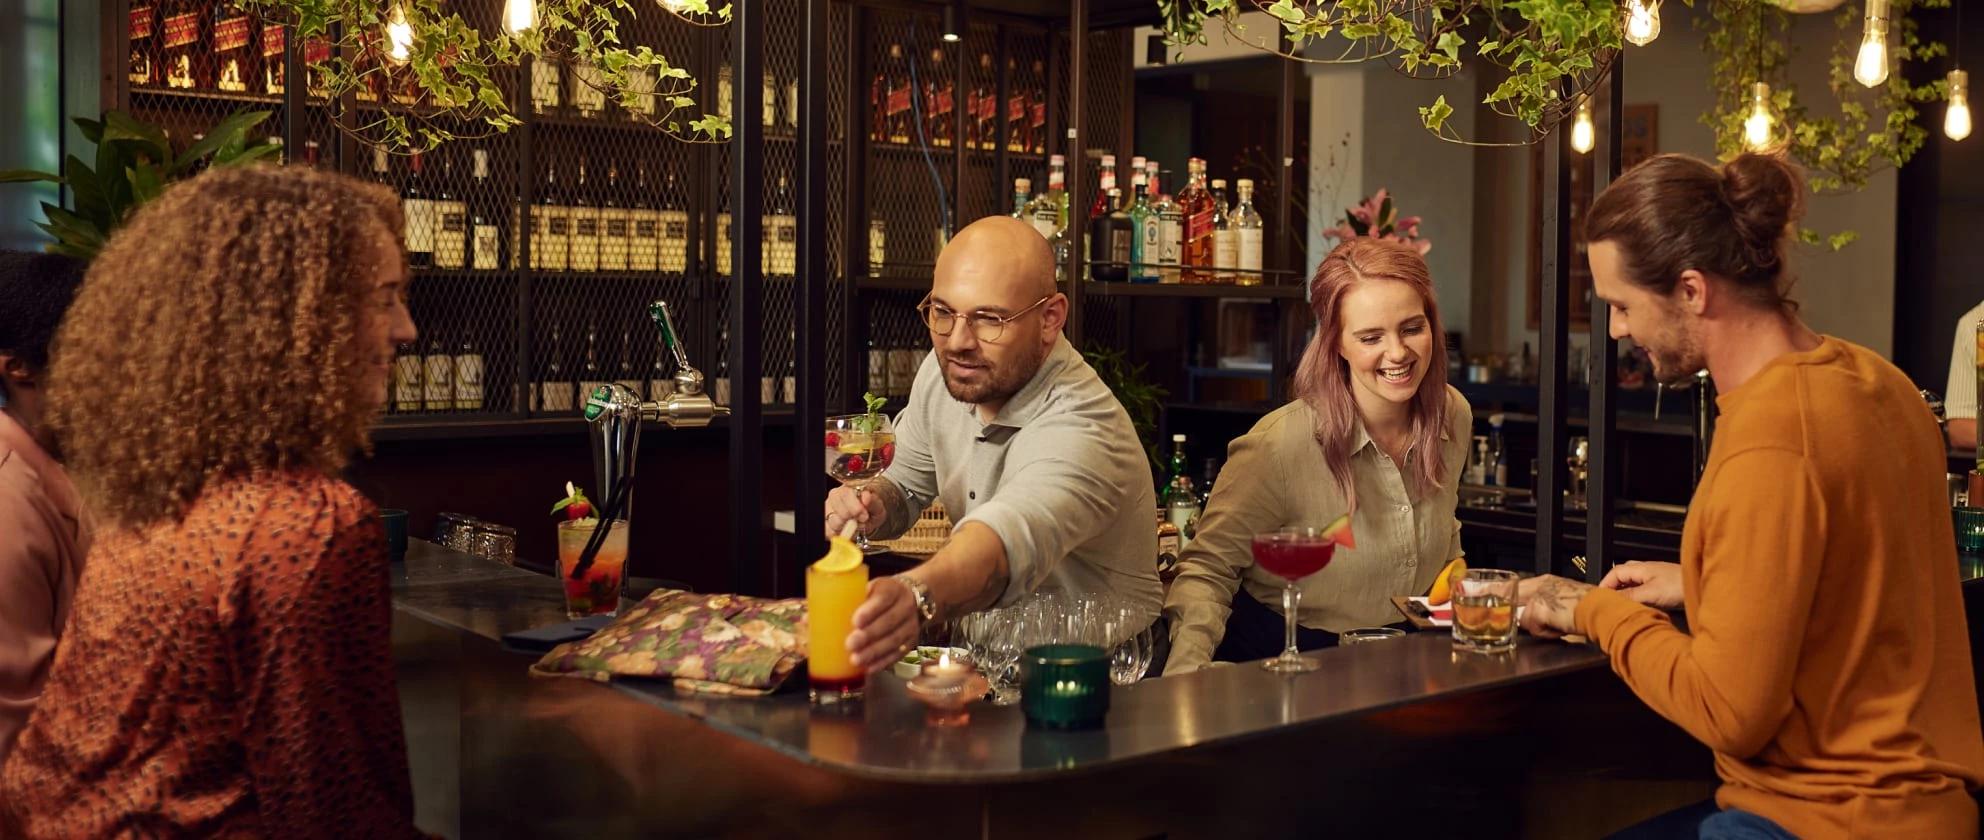 Due baristi consegnano i drink ai loro clienti